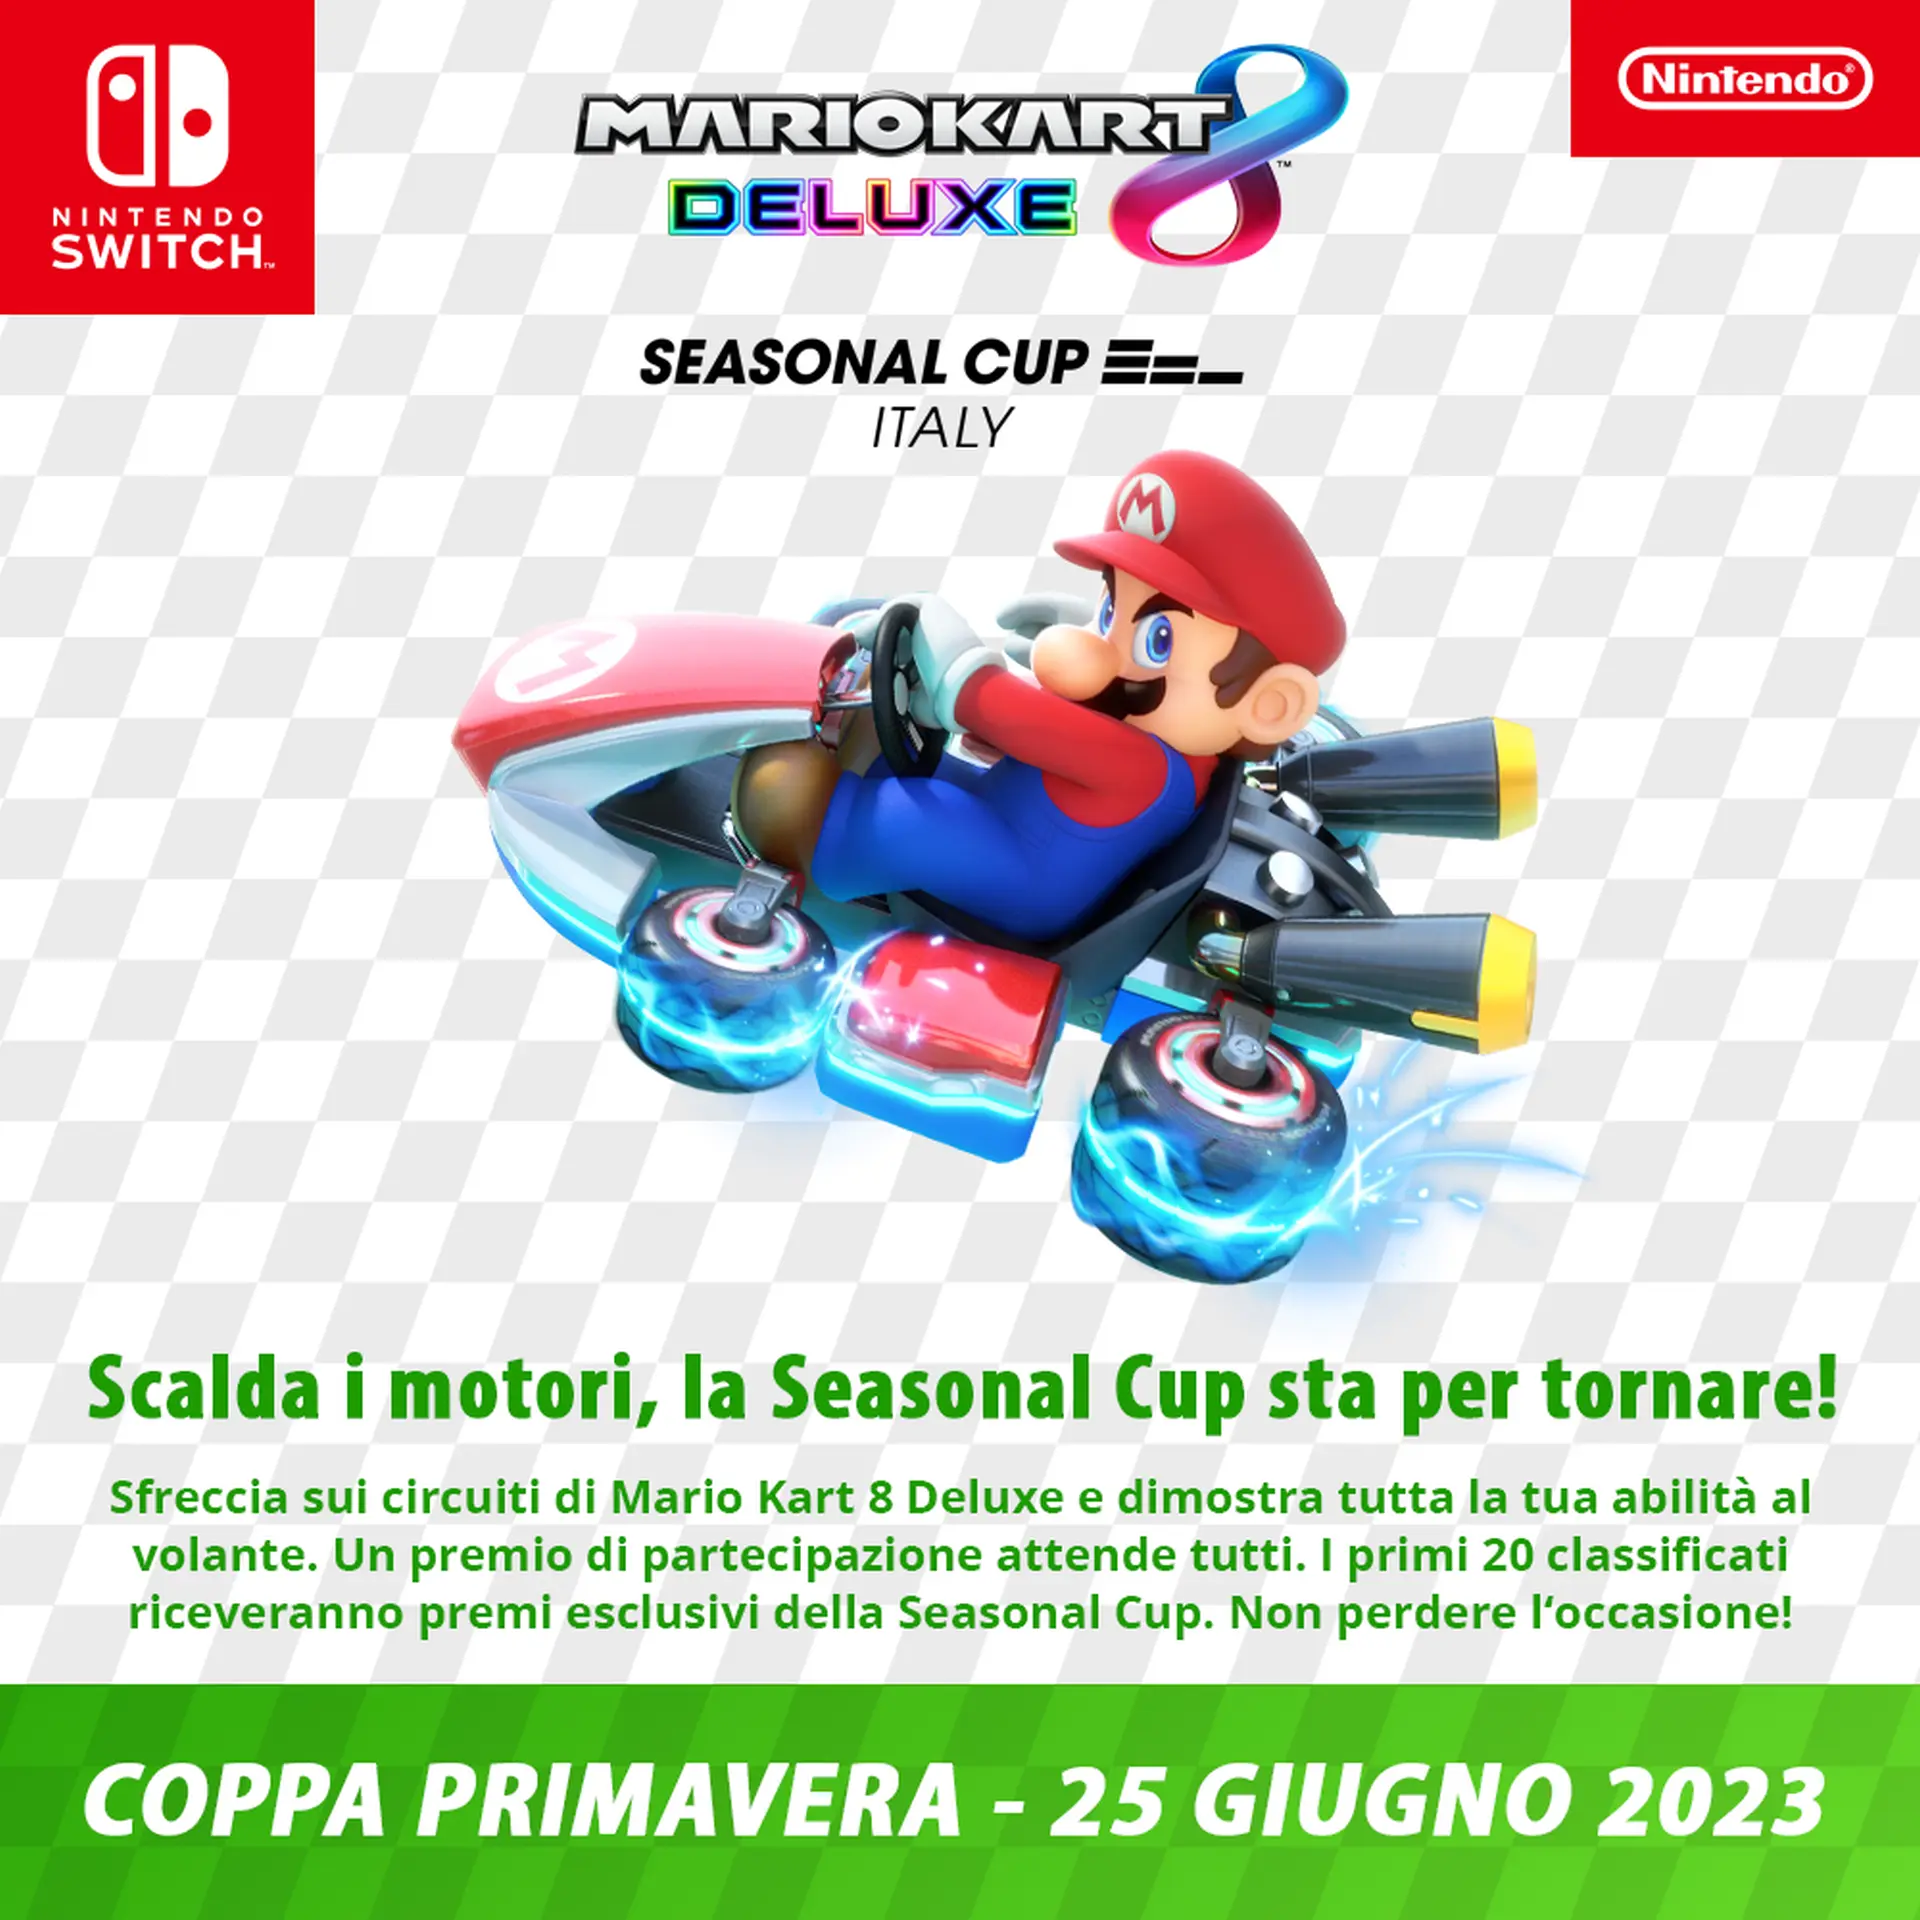 Mario Kart 8 Deluxe Seasonal Cup Italy: al via il 25 Giugno il torneo aperto a tutti - come partecipare